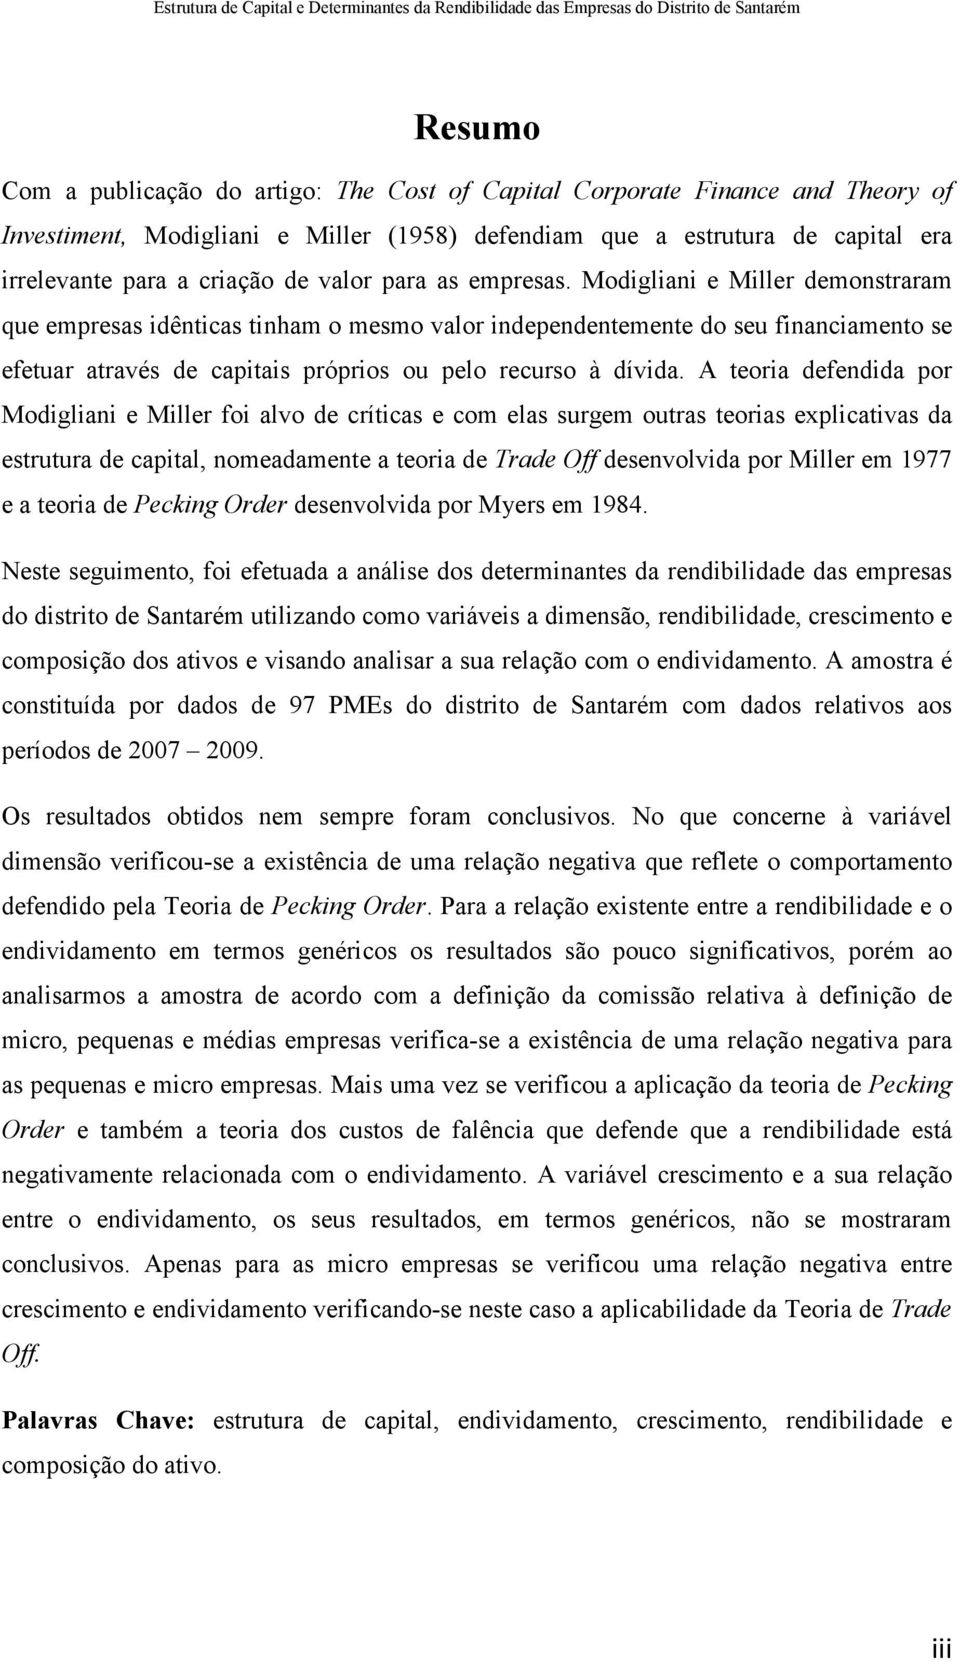 Modigliani e Miller demonstraram que empresas idênticas tinham o mesmo valor independentemente do seu financiamento se efetuar através de capitais próprios ou pelo recurso à dívida.